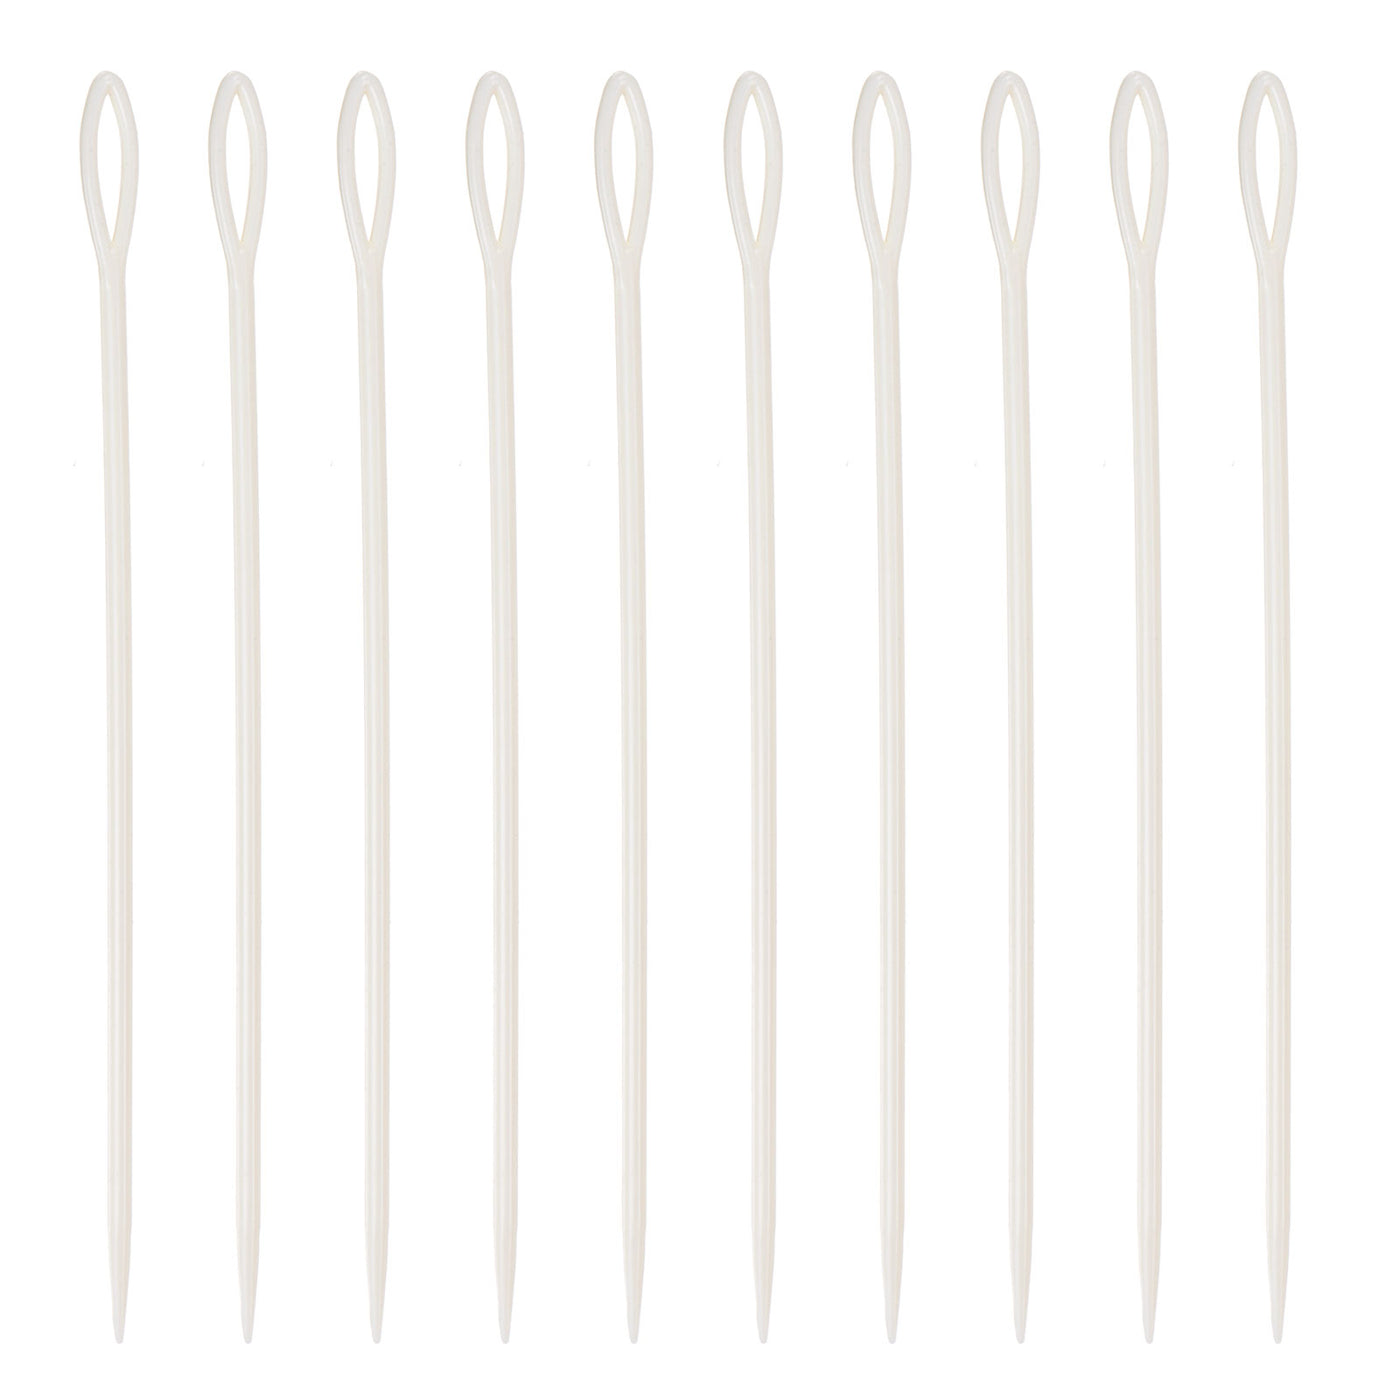 Harfington 20pcs Plastic Sewing Needles, 15cm Large Eye Blunt Learning Needles, White